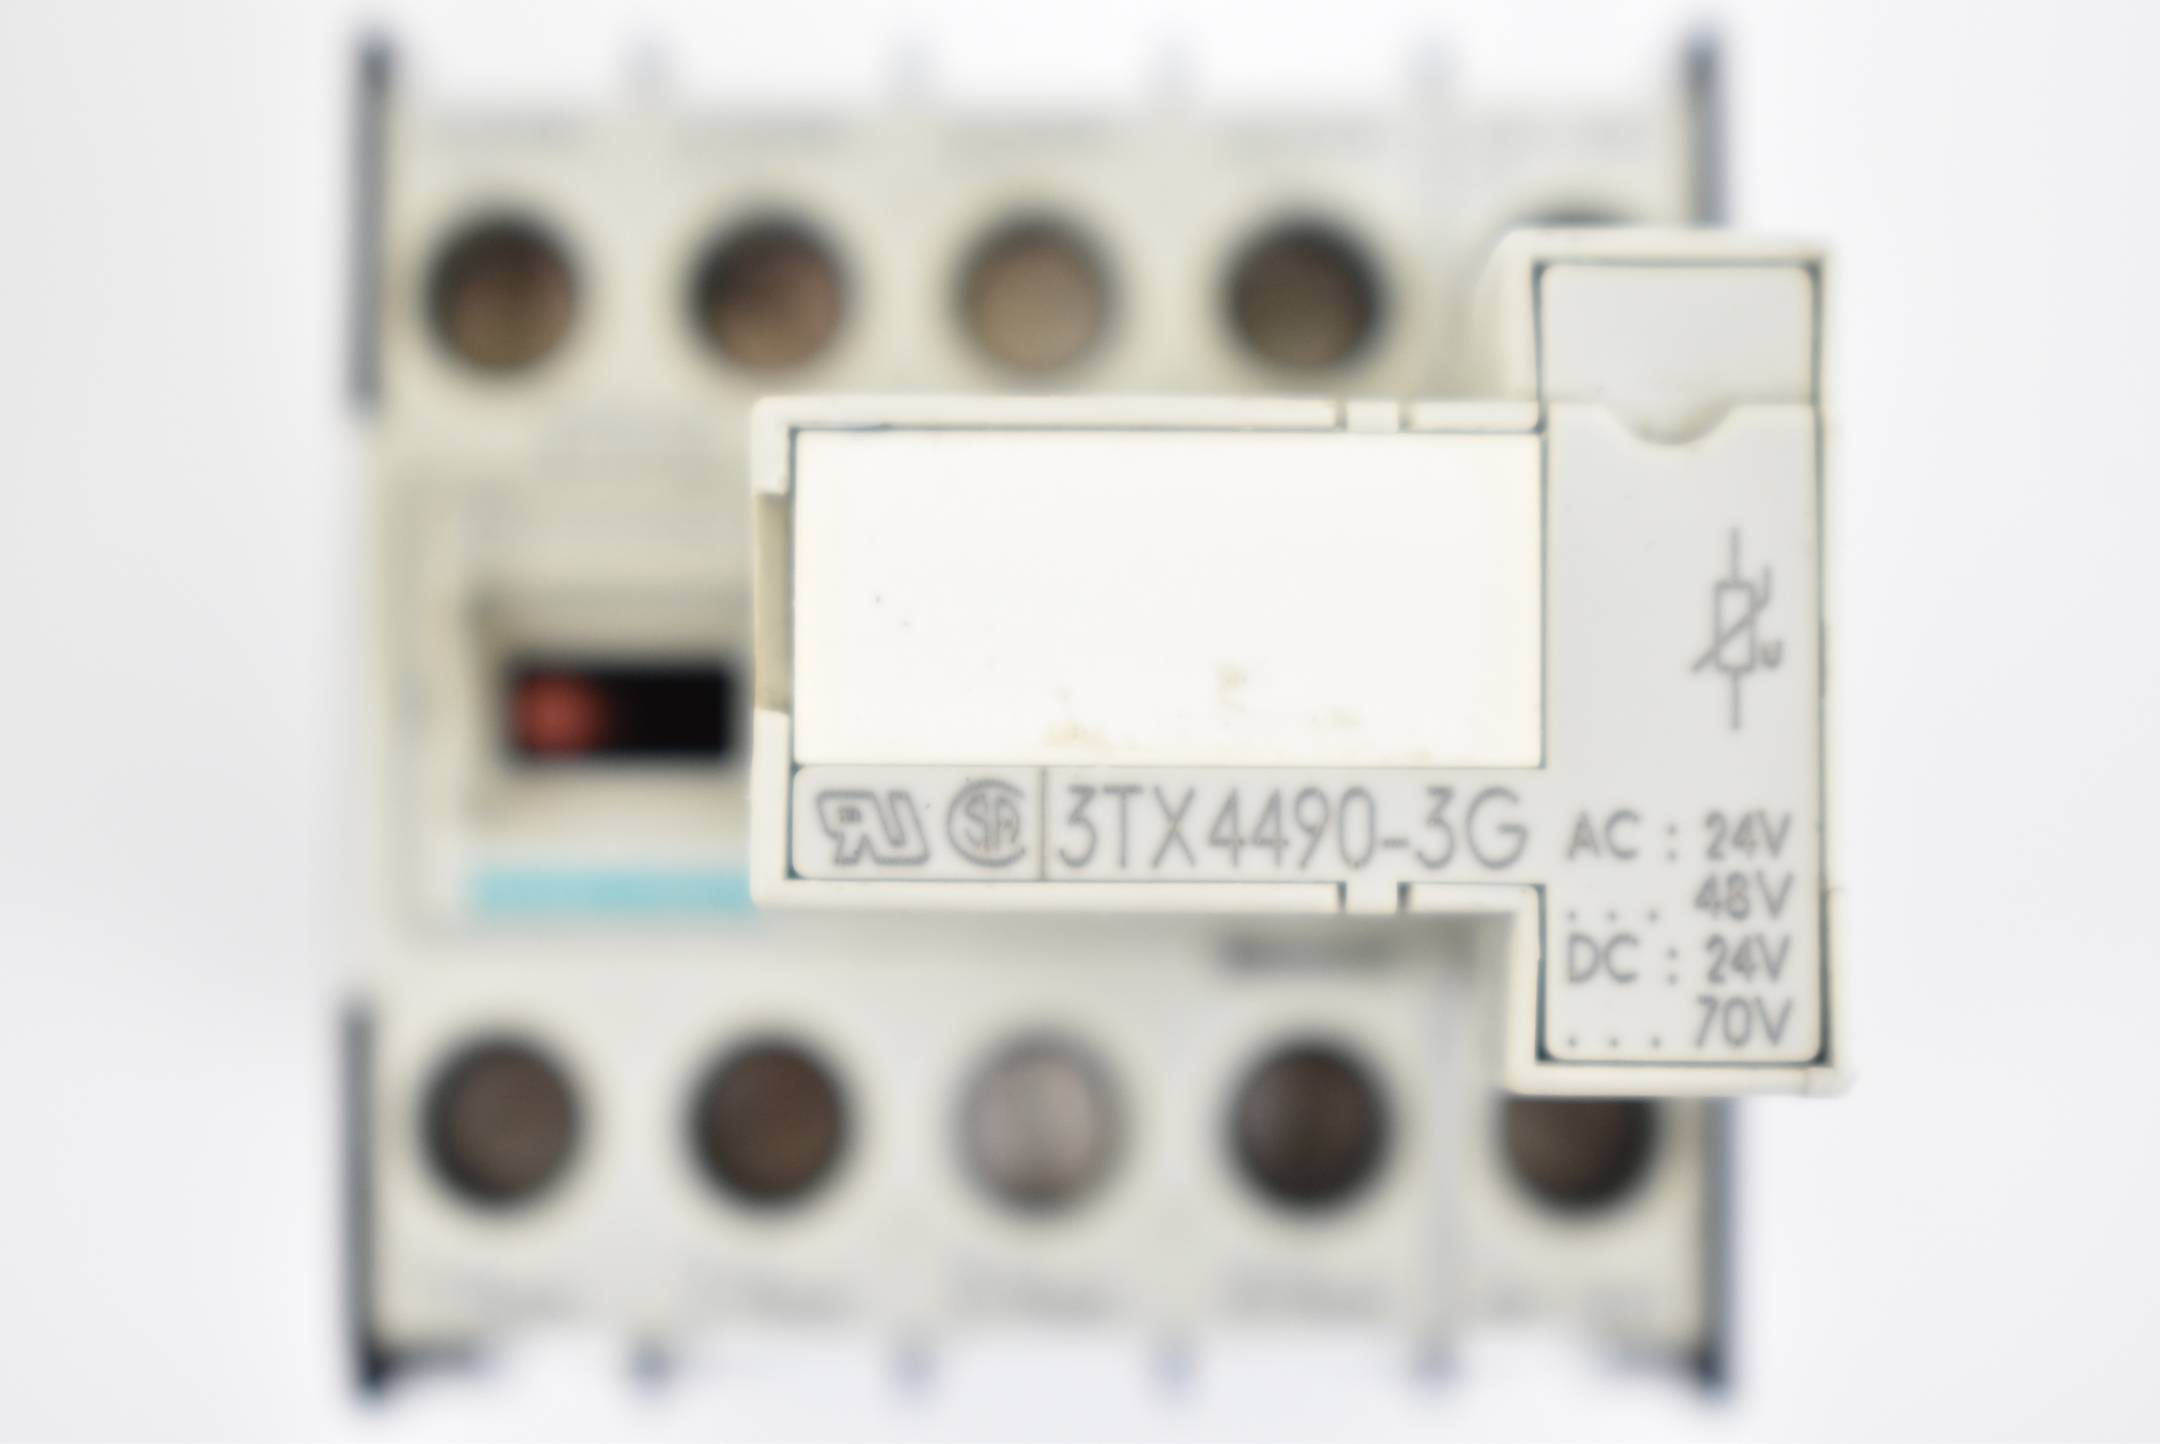 Siemens Hilfsschütz 3TH2040-0BB4 inkl. Überspannungsbegrenzer 3TX4490-3G